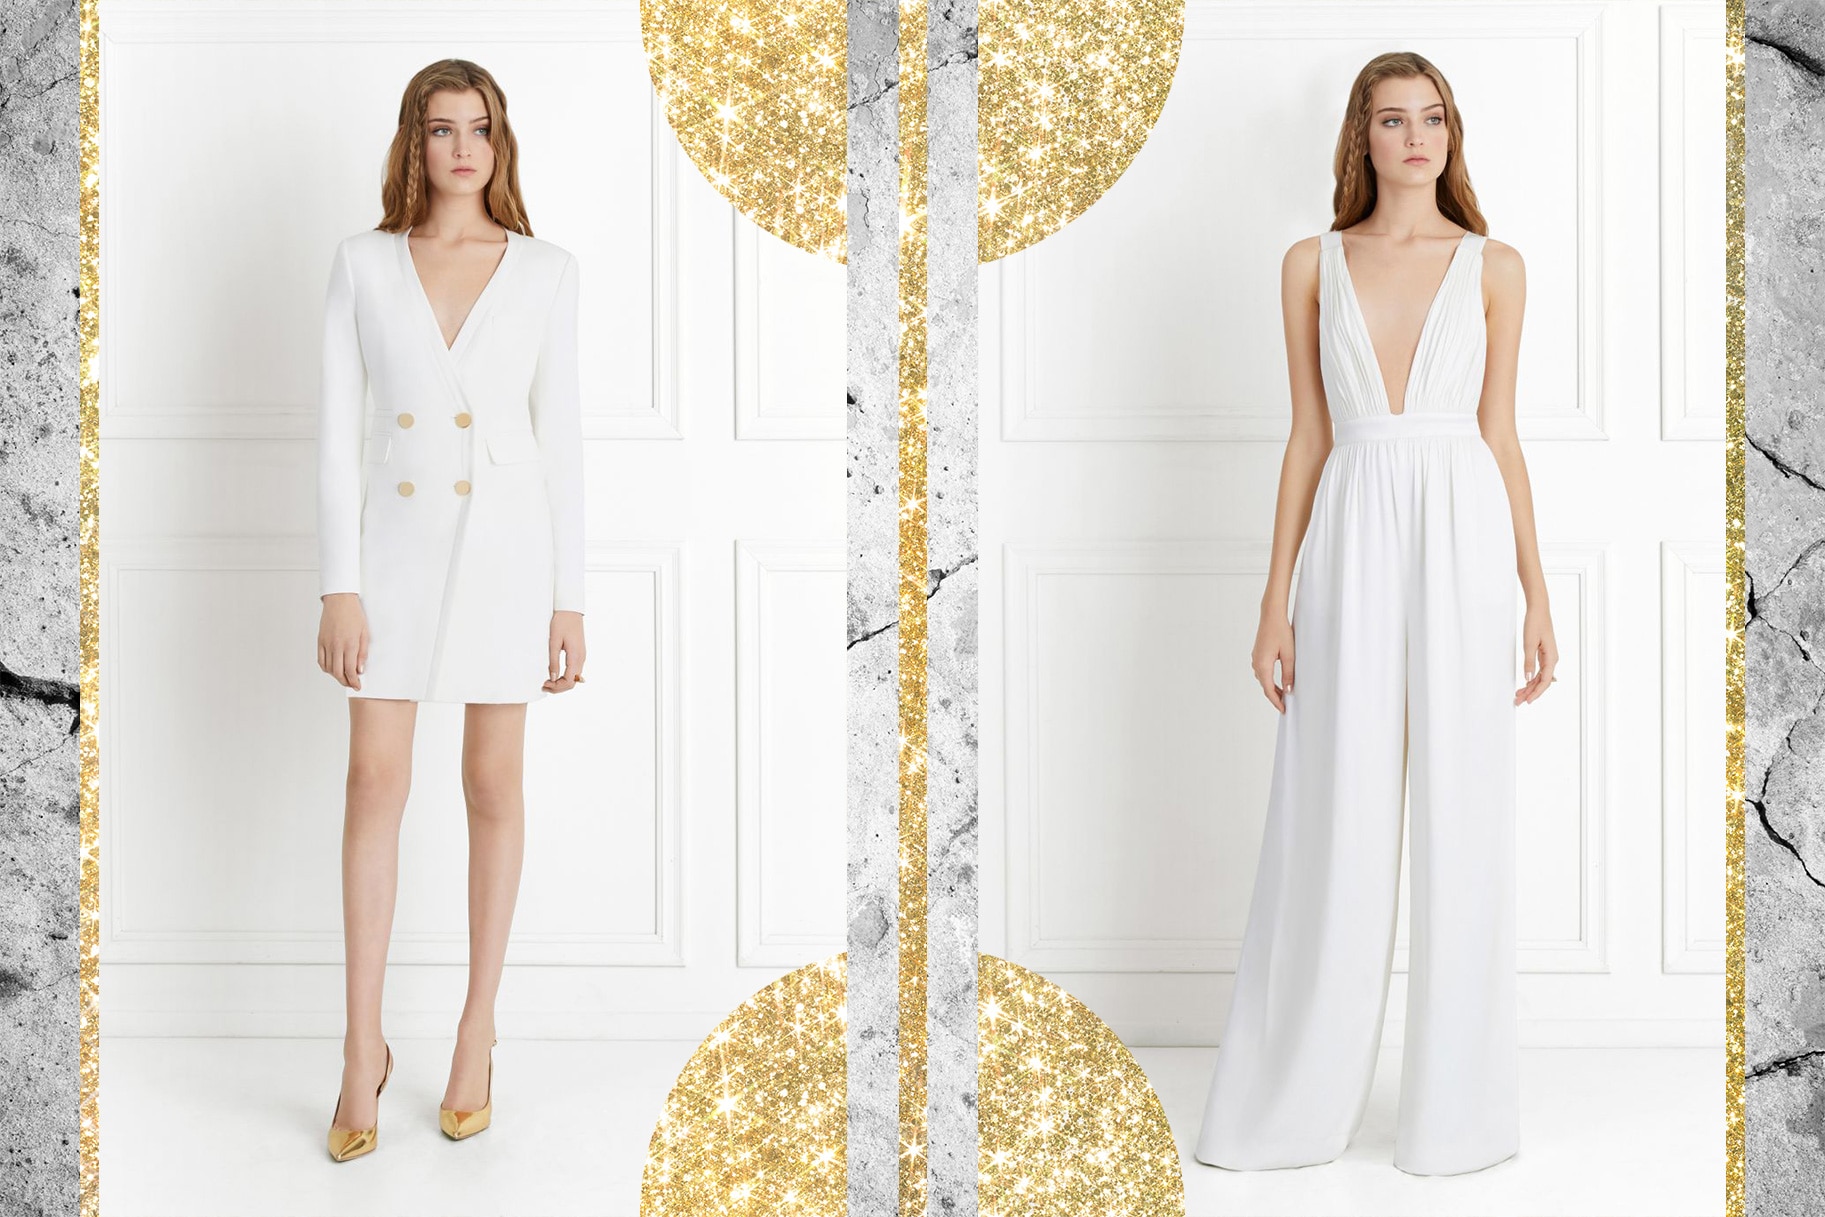 Rachel Zoe Launches Bridal Line, The Wedding Edit: Shop Gowns